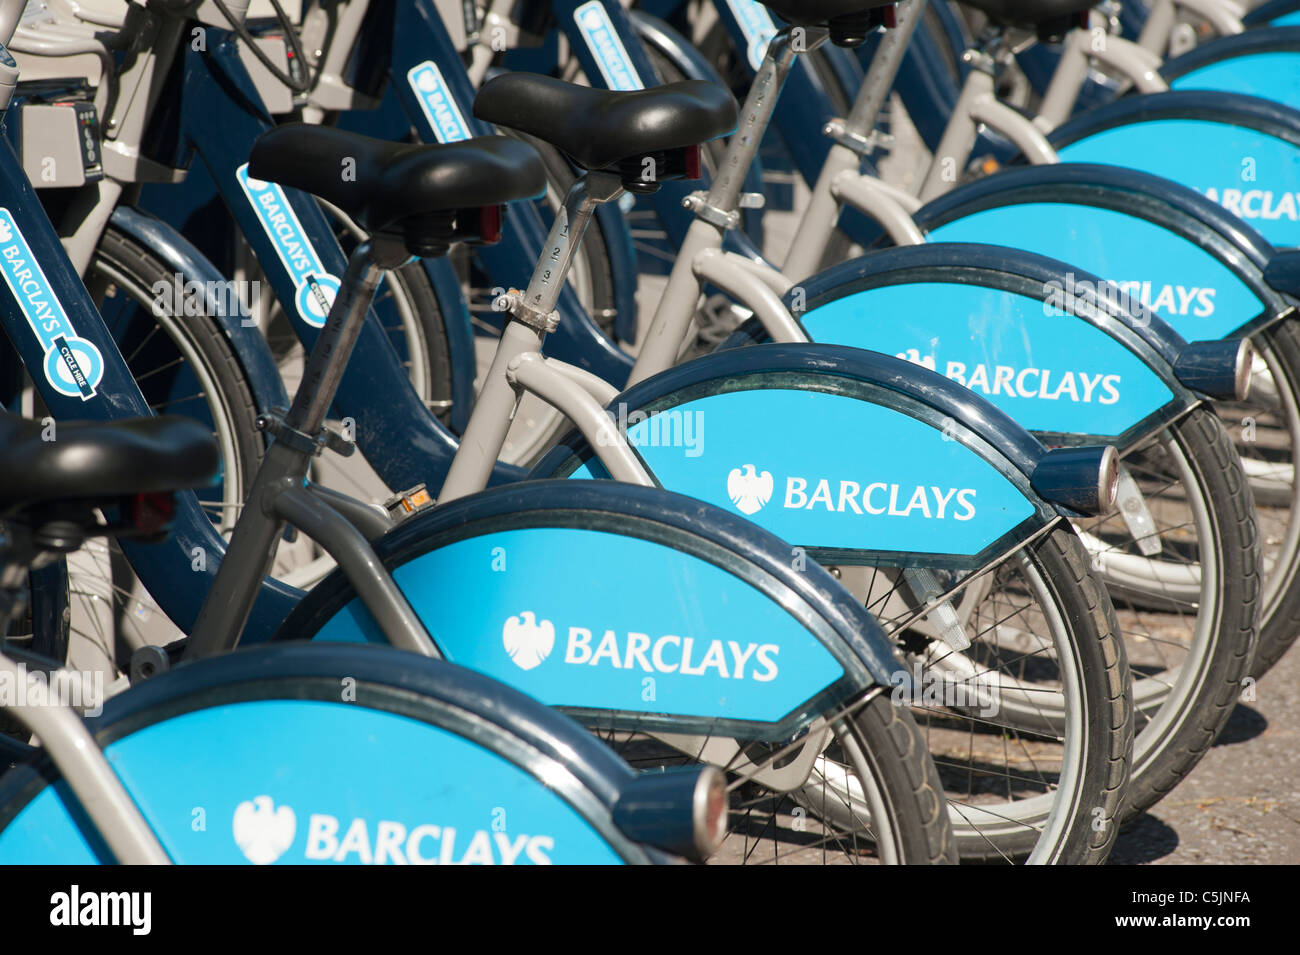 Fahrräder, die Teil des Londoner Zyklus Regelung. Barclays waren die ursprünglichen Sponsor der Regelung, aber auch andere Unternehmen haben jetzt über das Sponsoring übernommen. Stockfoto